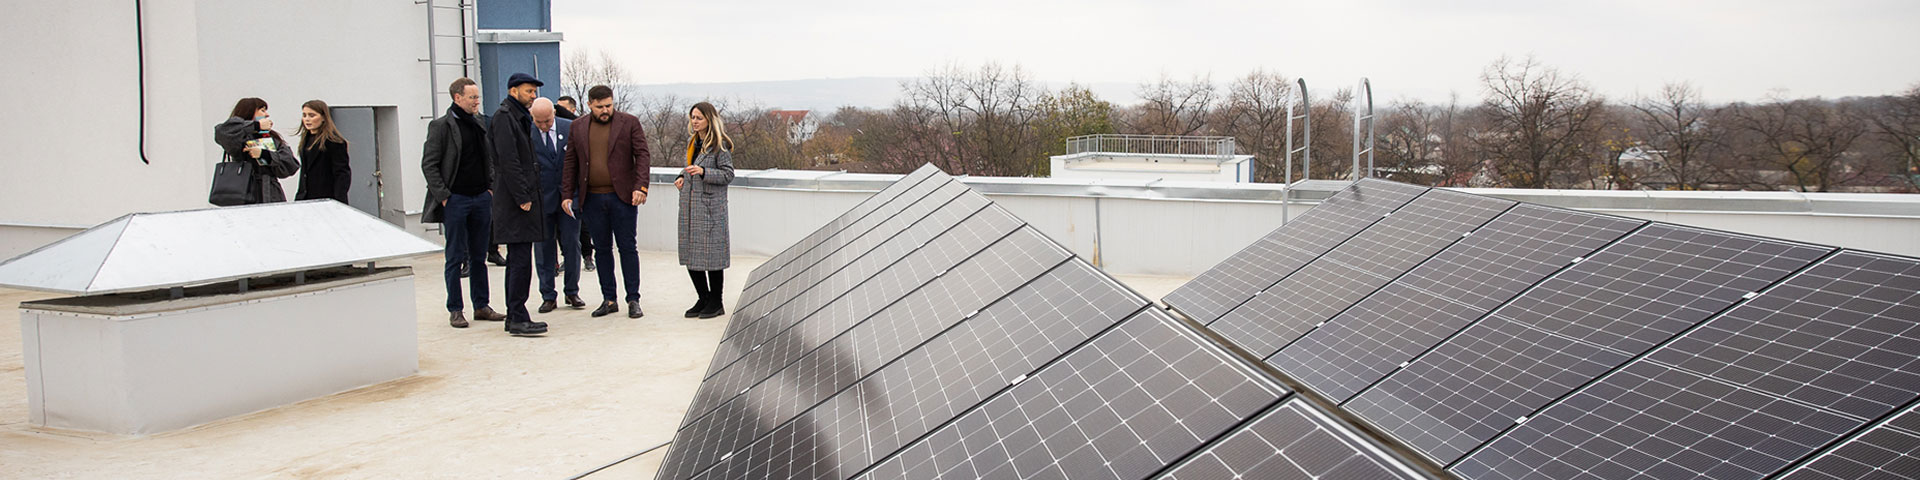 Mehrere Menschen stehen auf einem Dach neben einer Photovoltaikanlage 